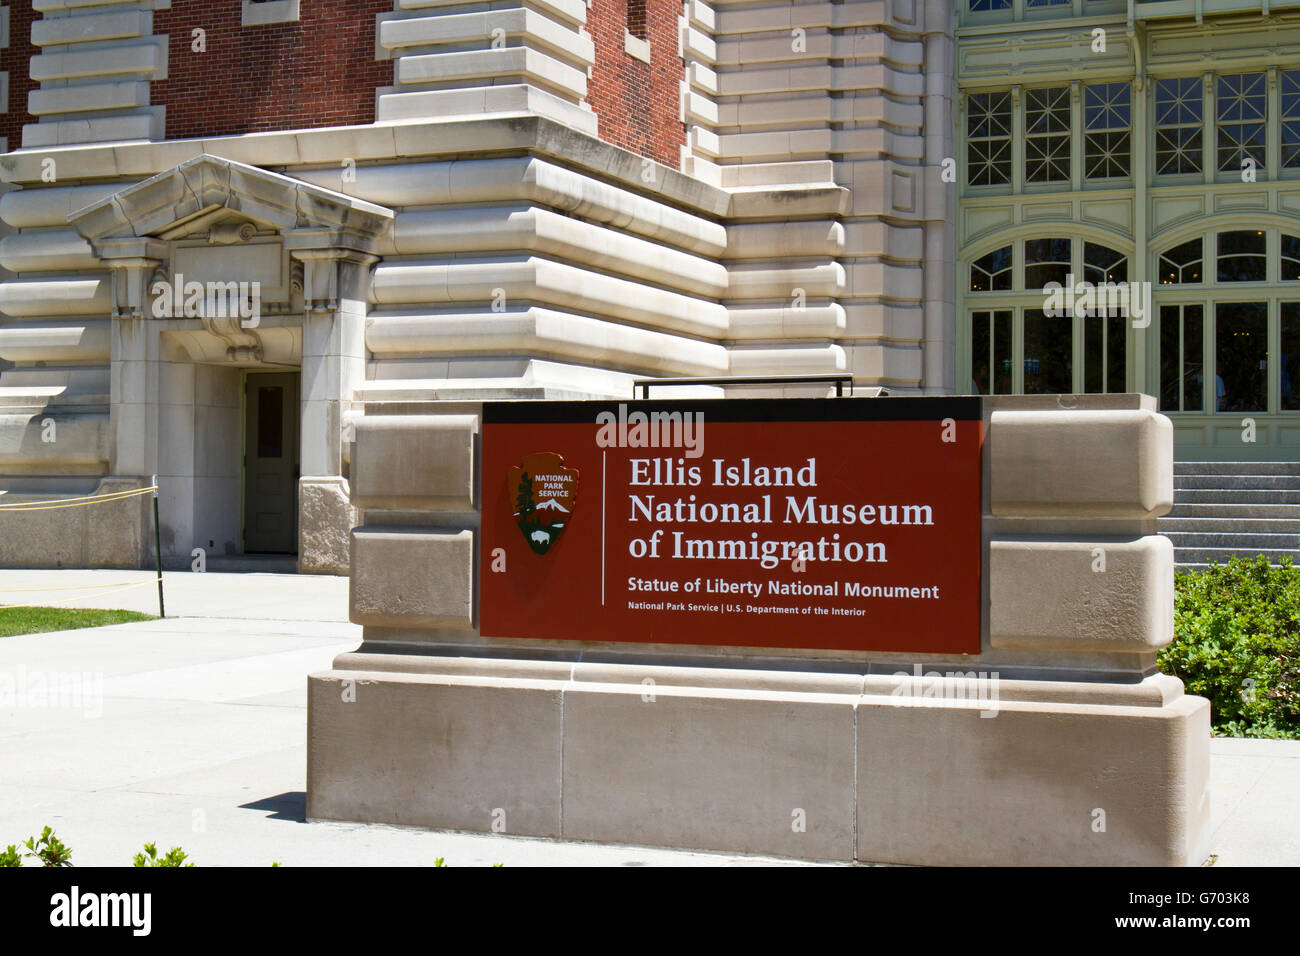 Ellis Island, New York, USA - 18 juin 2016 : National Parks Service ouvrir une session avant d'Ellis Island Musée National de l'Immigrati Banque D'Images